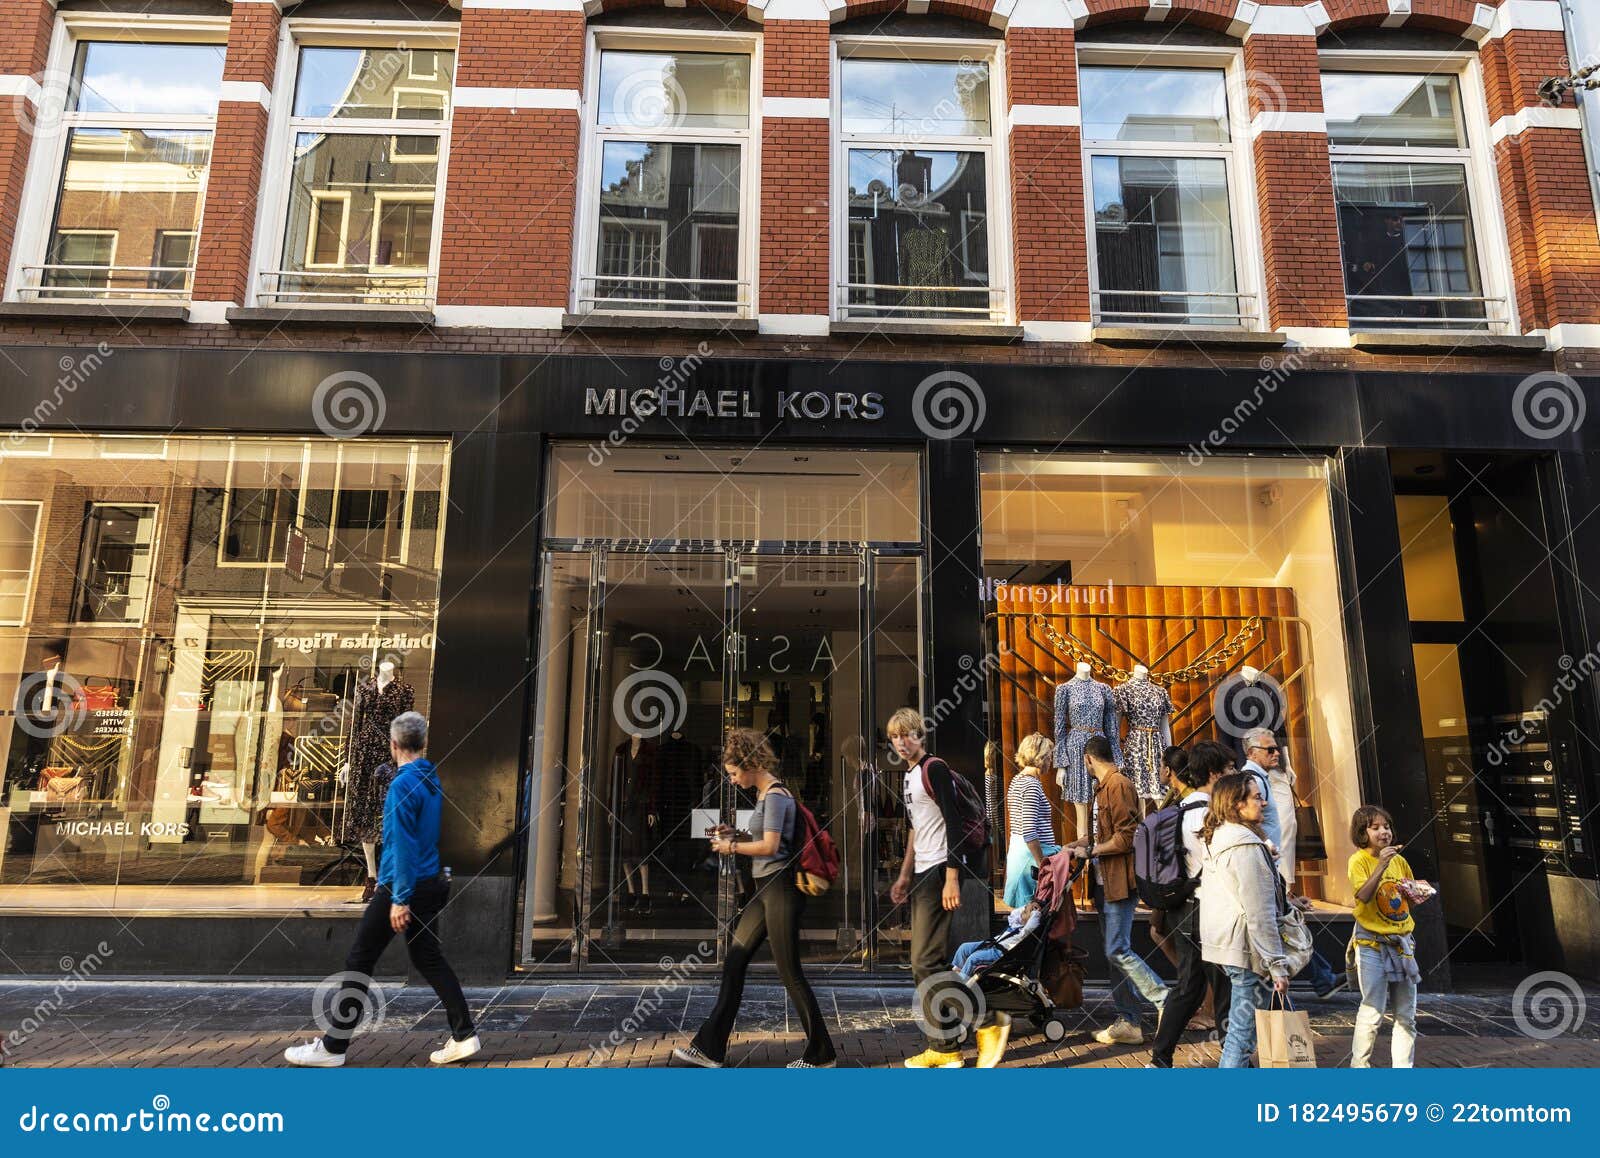 Nodig hebben Droogte Gebakjes Michael Kors - Kledingwinkel in Amsterdam Nederland Redactionele Stock  Afbeelding - Image of winkel, mensen: 182495679